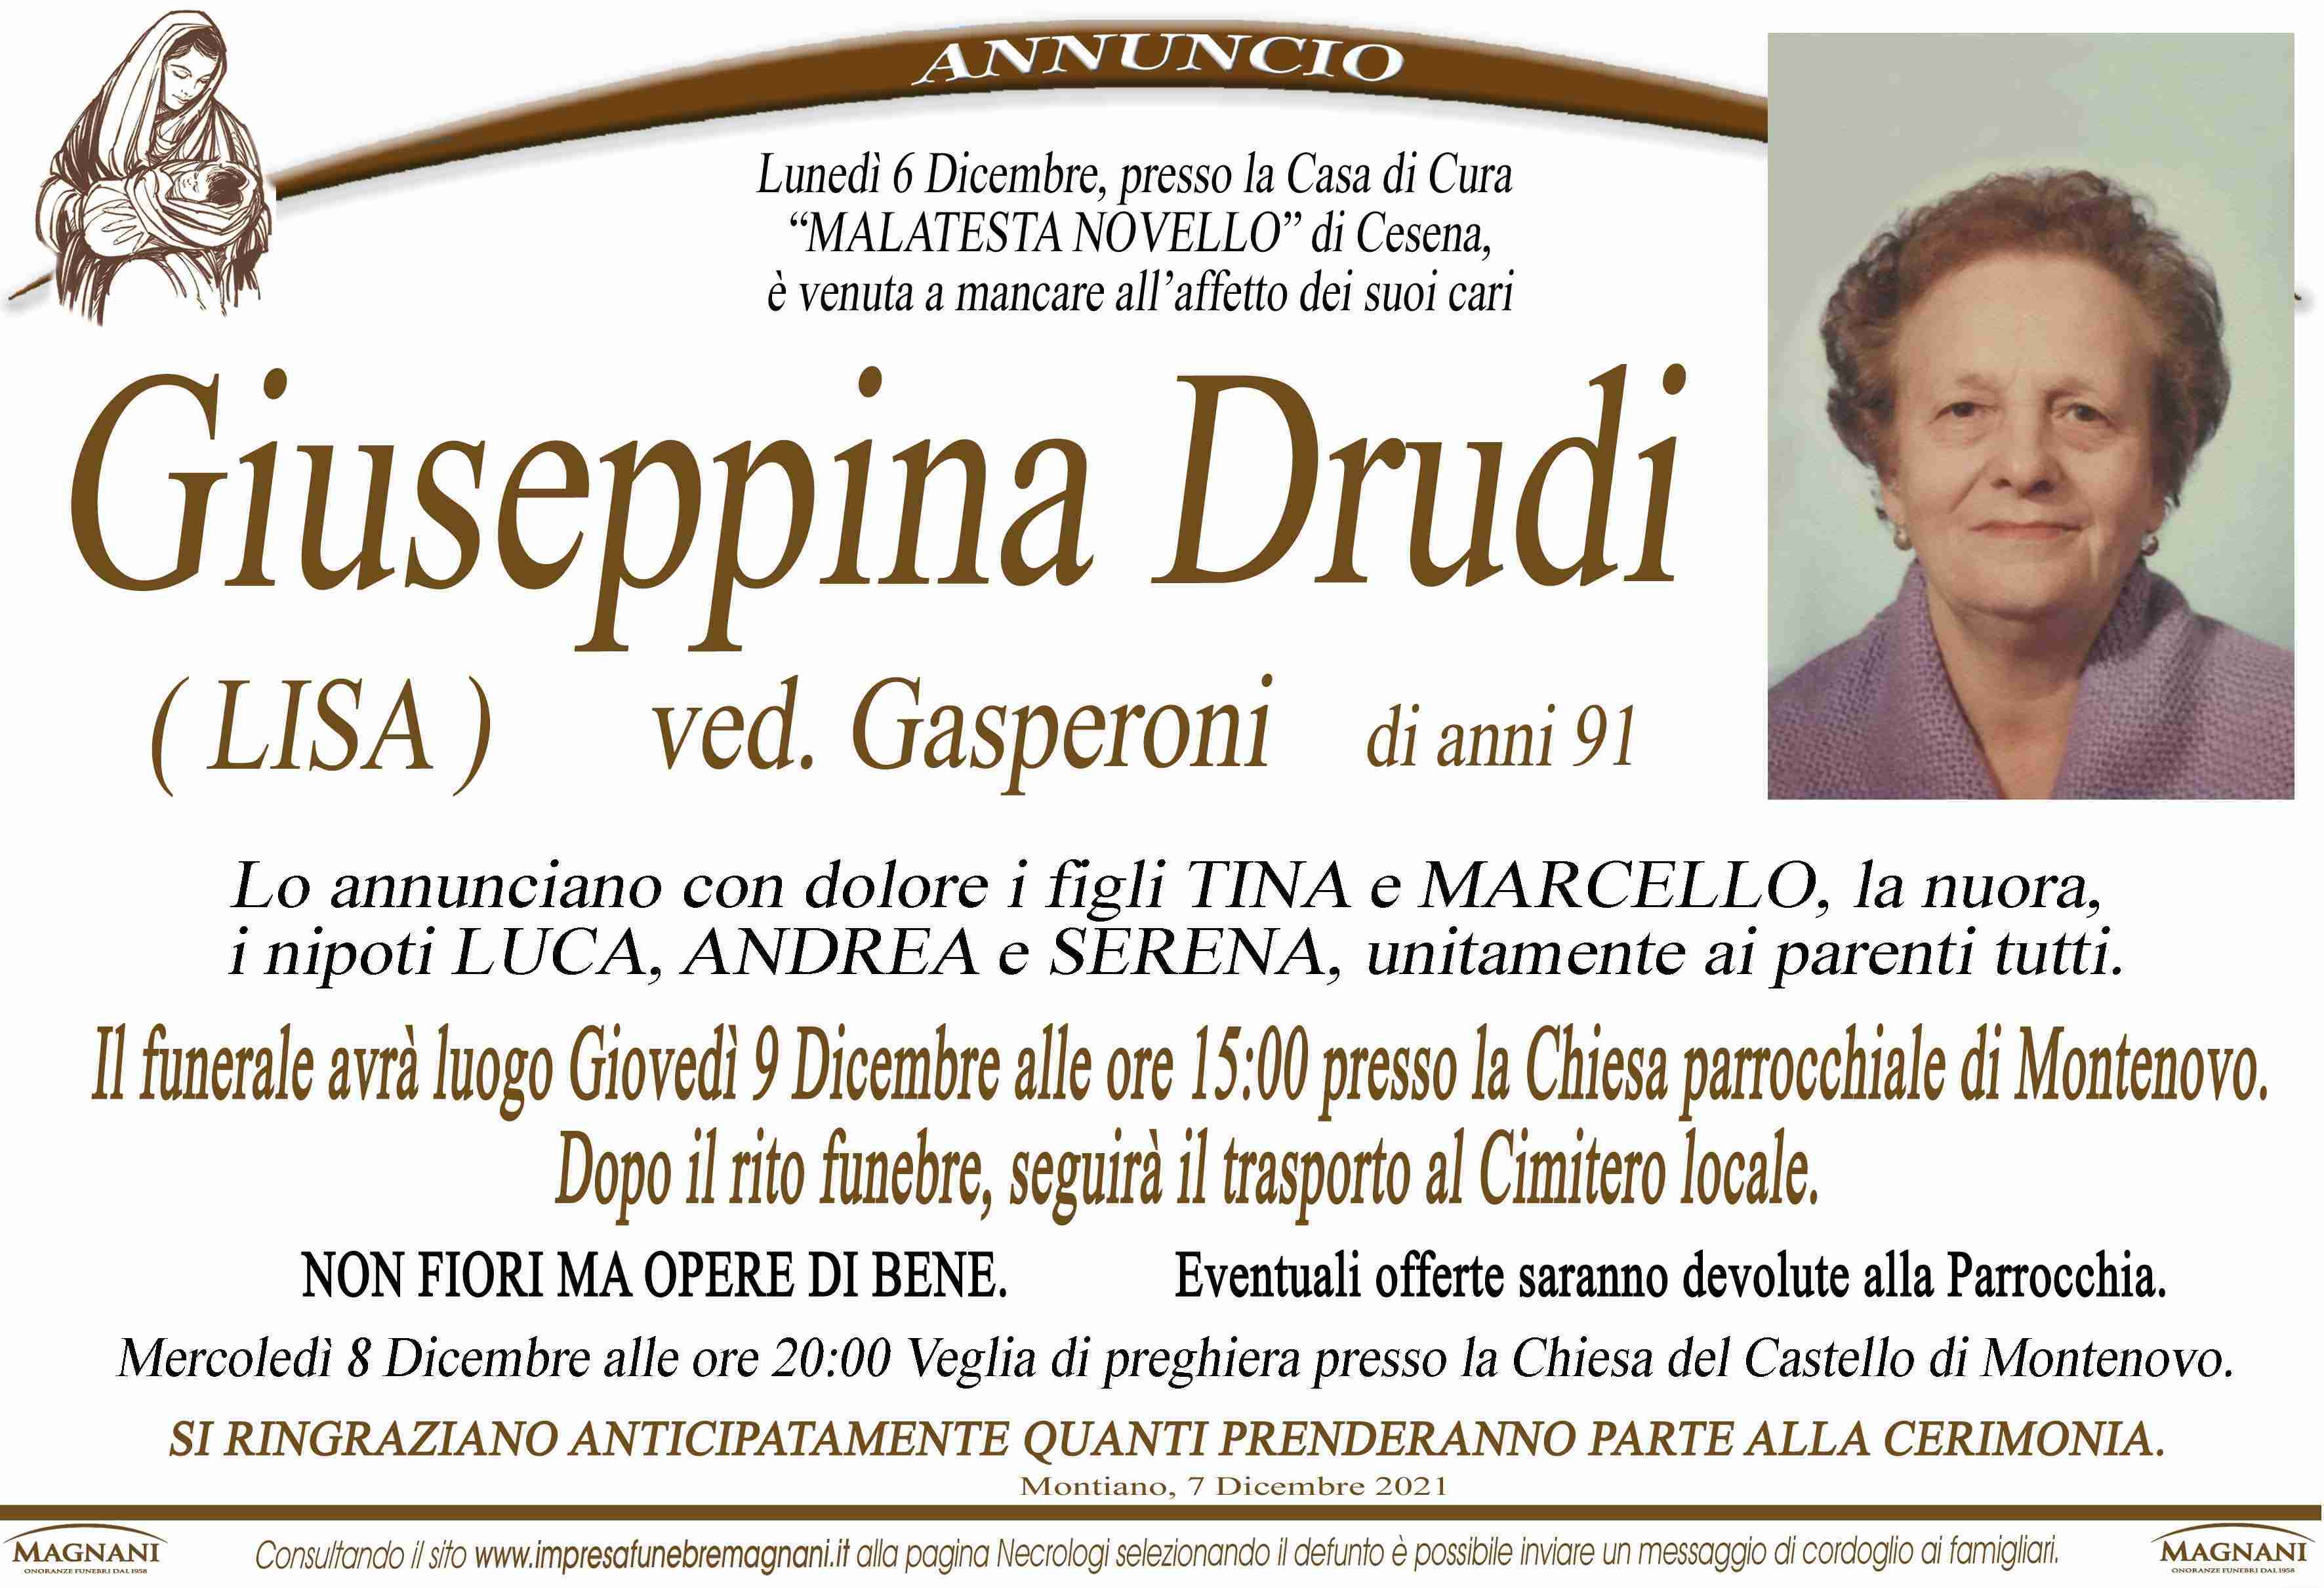 Giuseppina Drudi